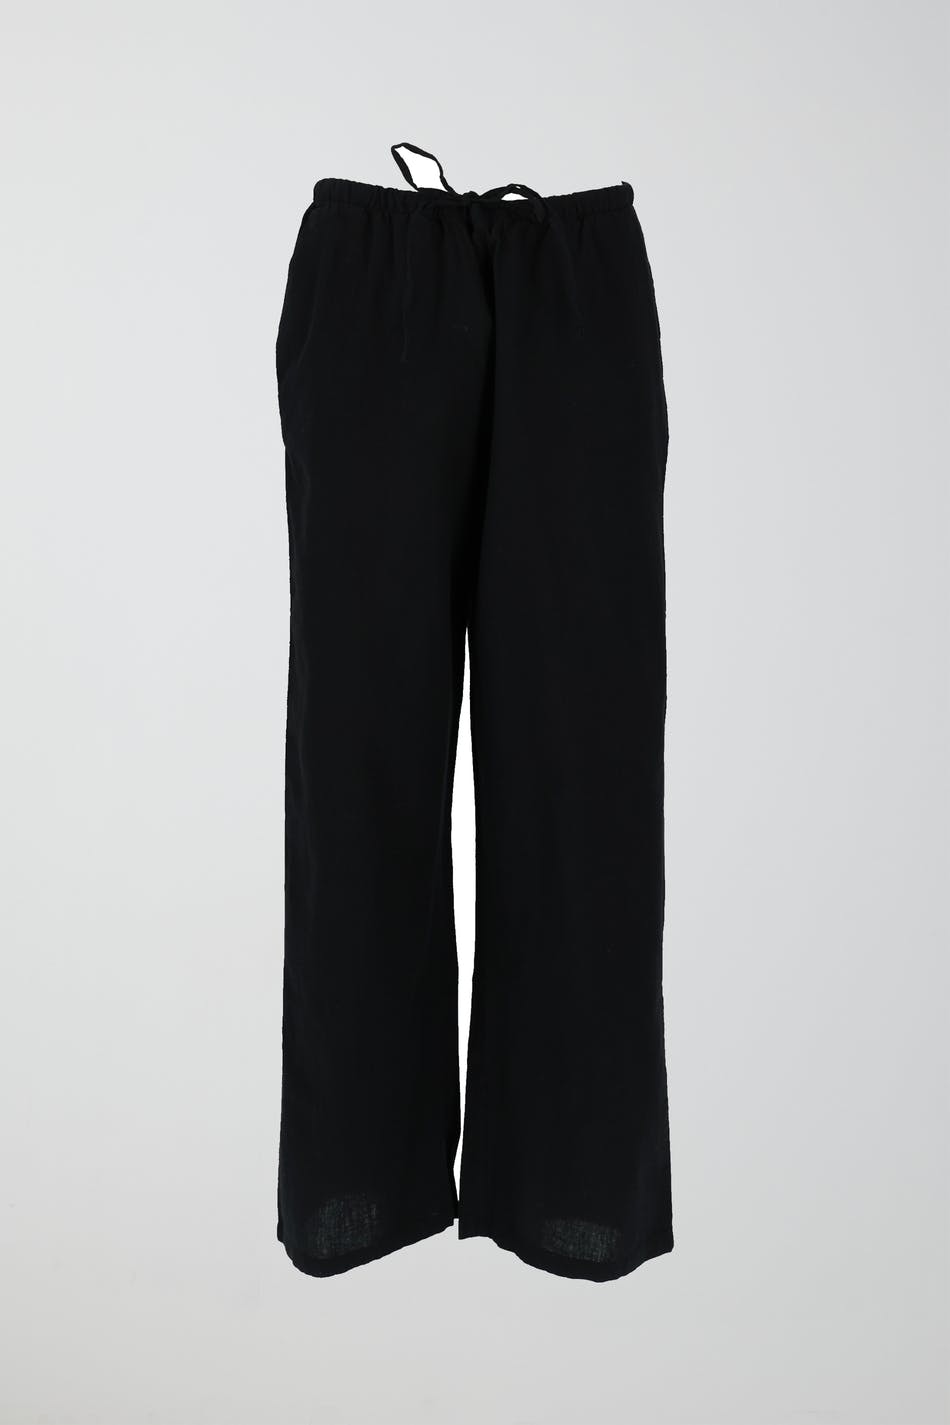 Gina Tricot - Tall linen blend trousers - hørbukser- Black - L - Female